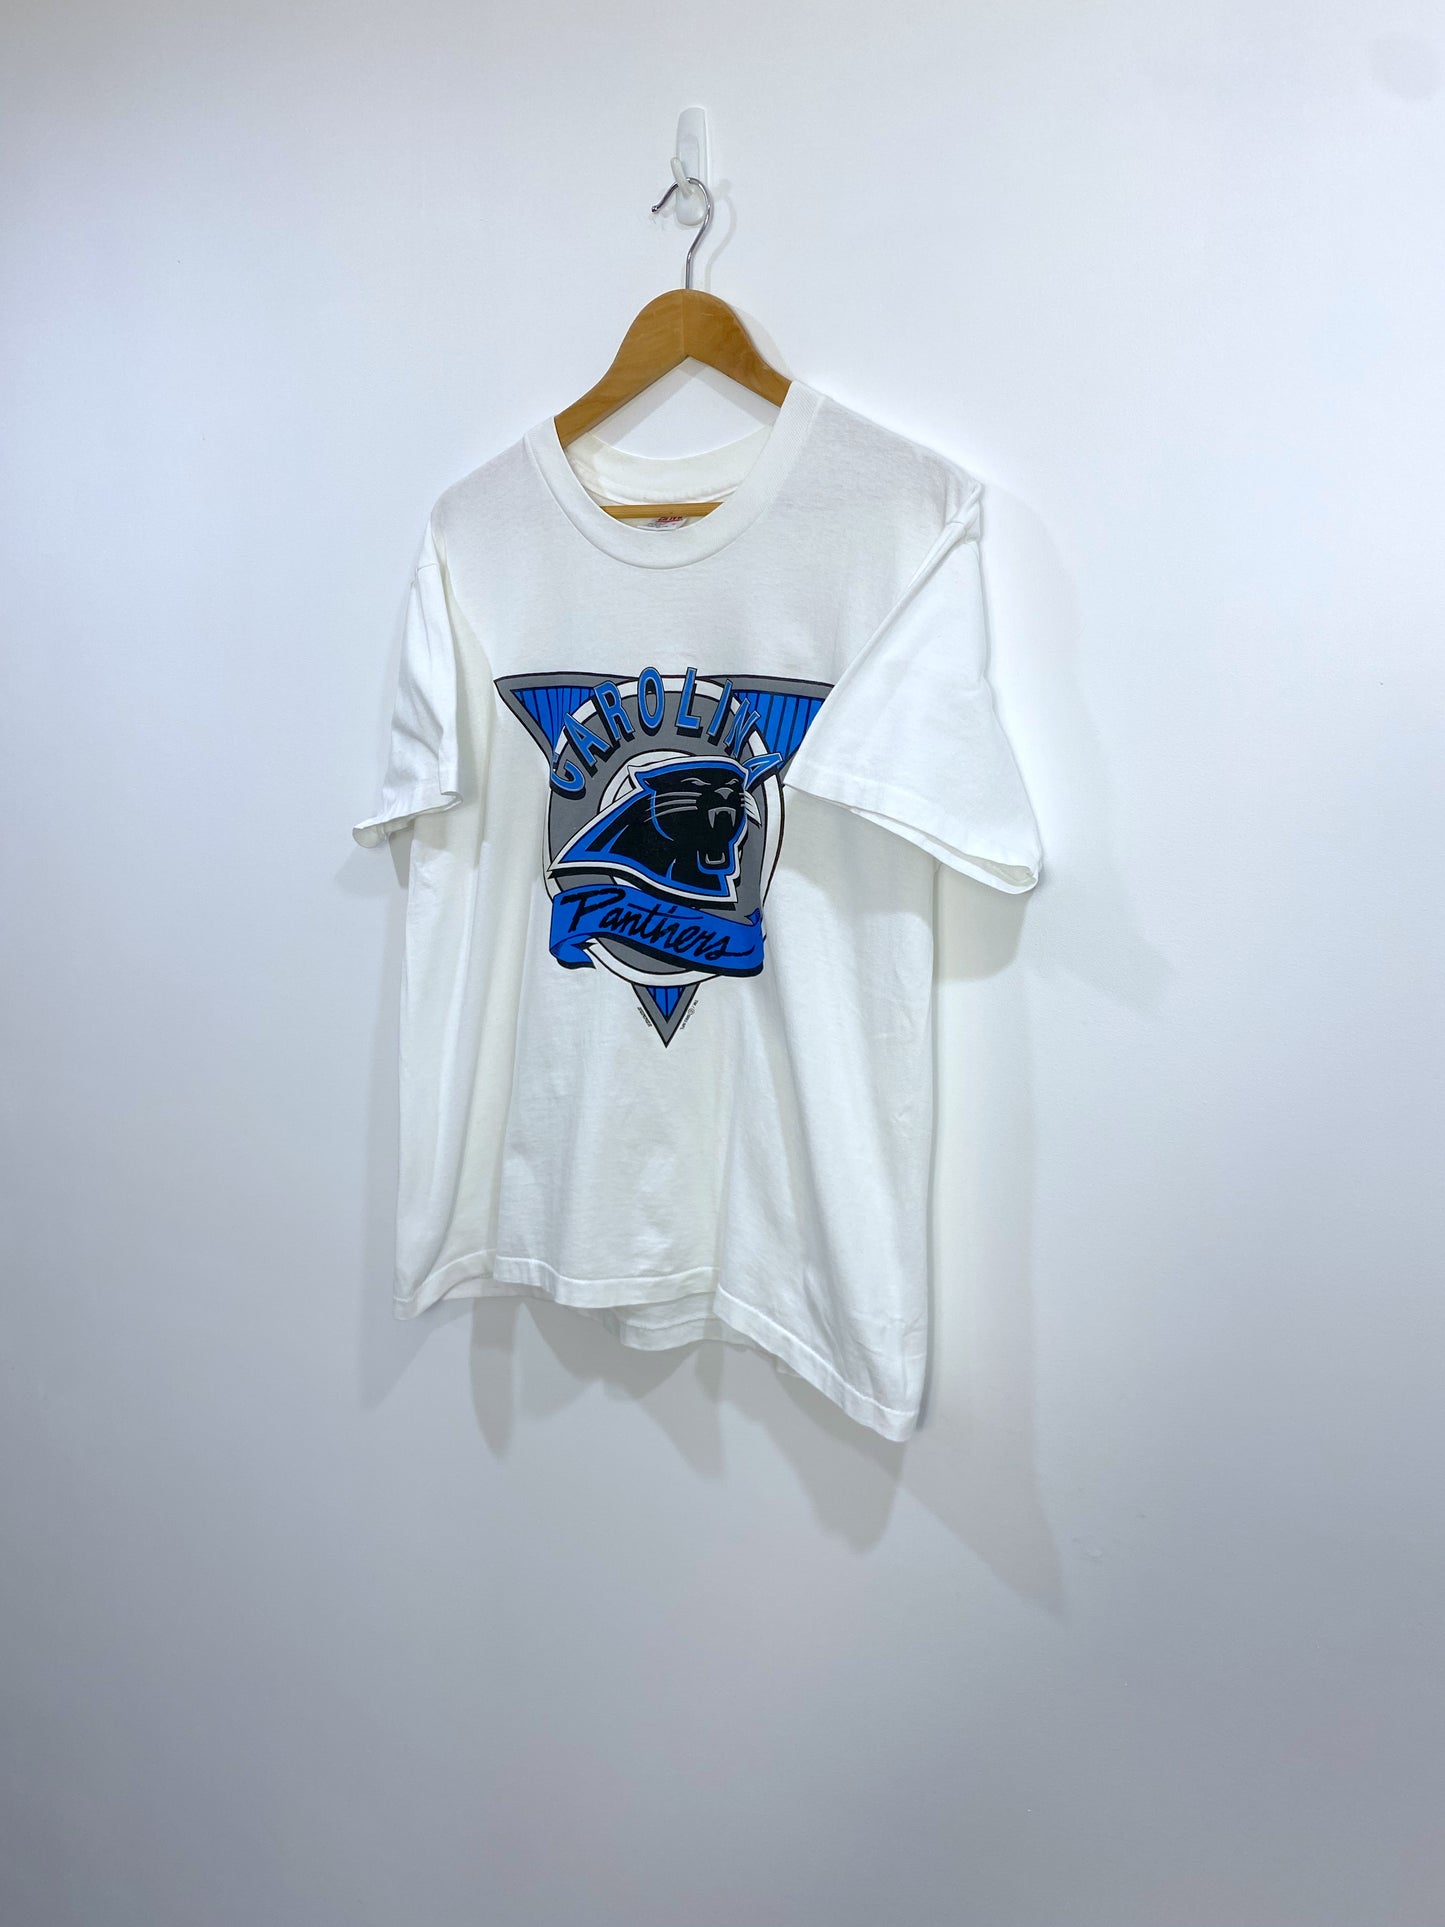 Vintage 1993 Carolina Panthers T-shirt M